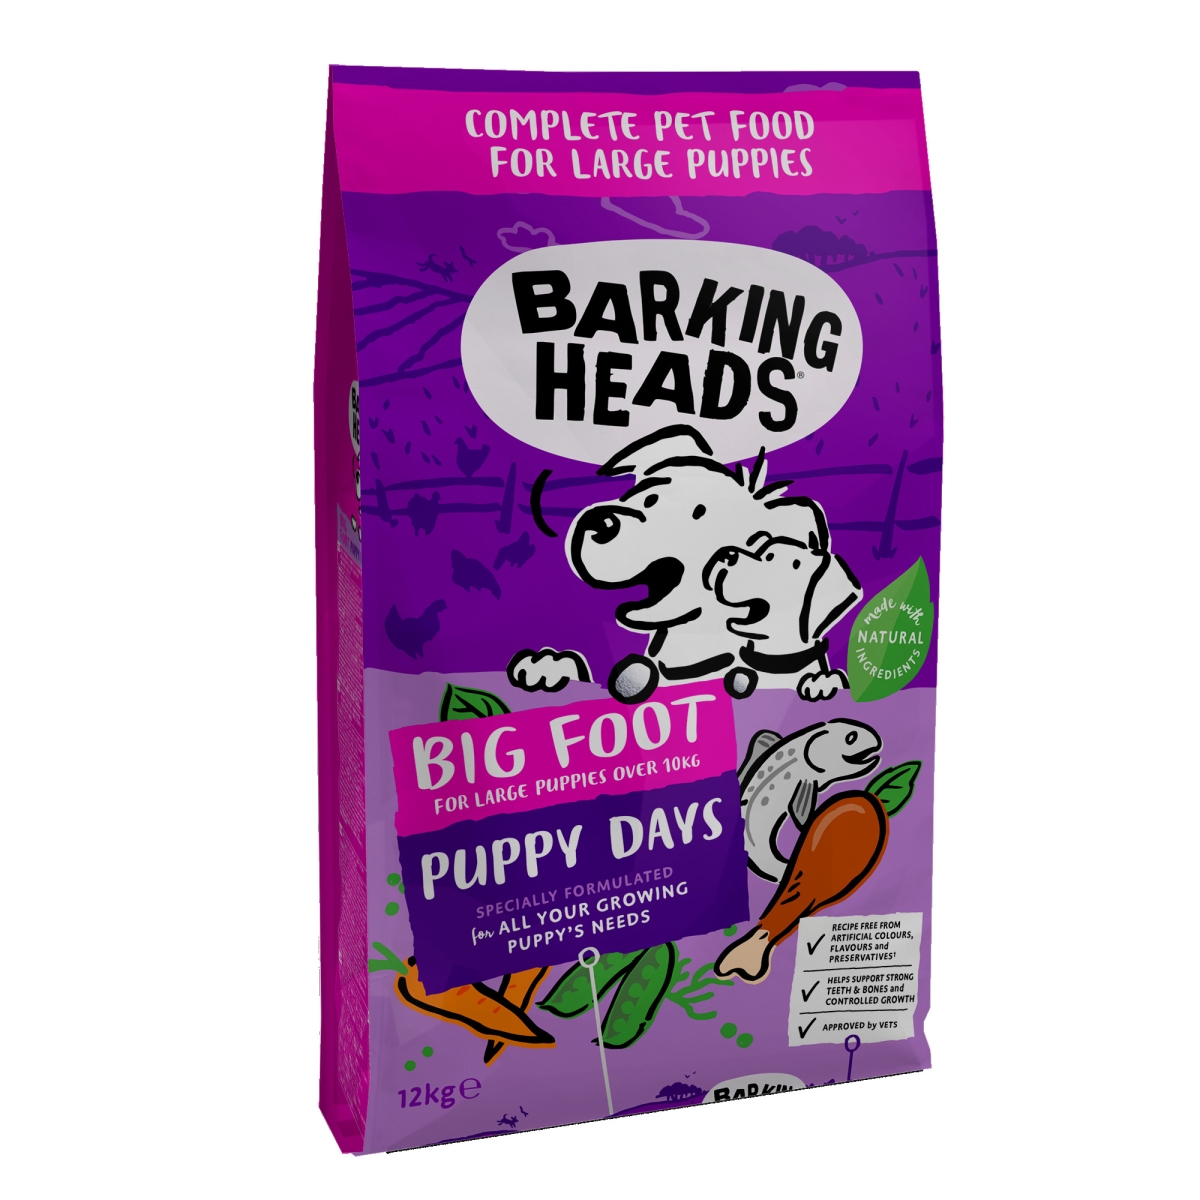 Barking Heads Puppy Days barība lielo šķirņu suņiem 12 kg